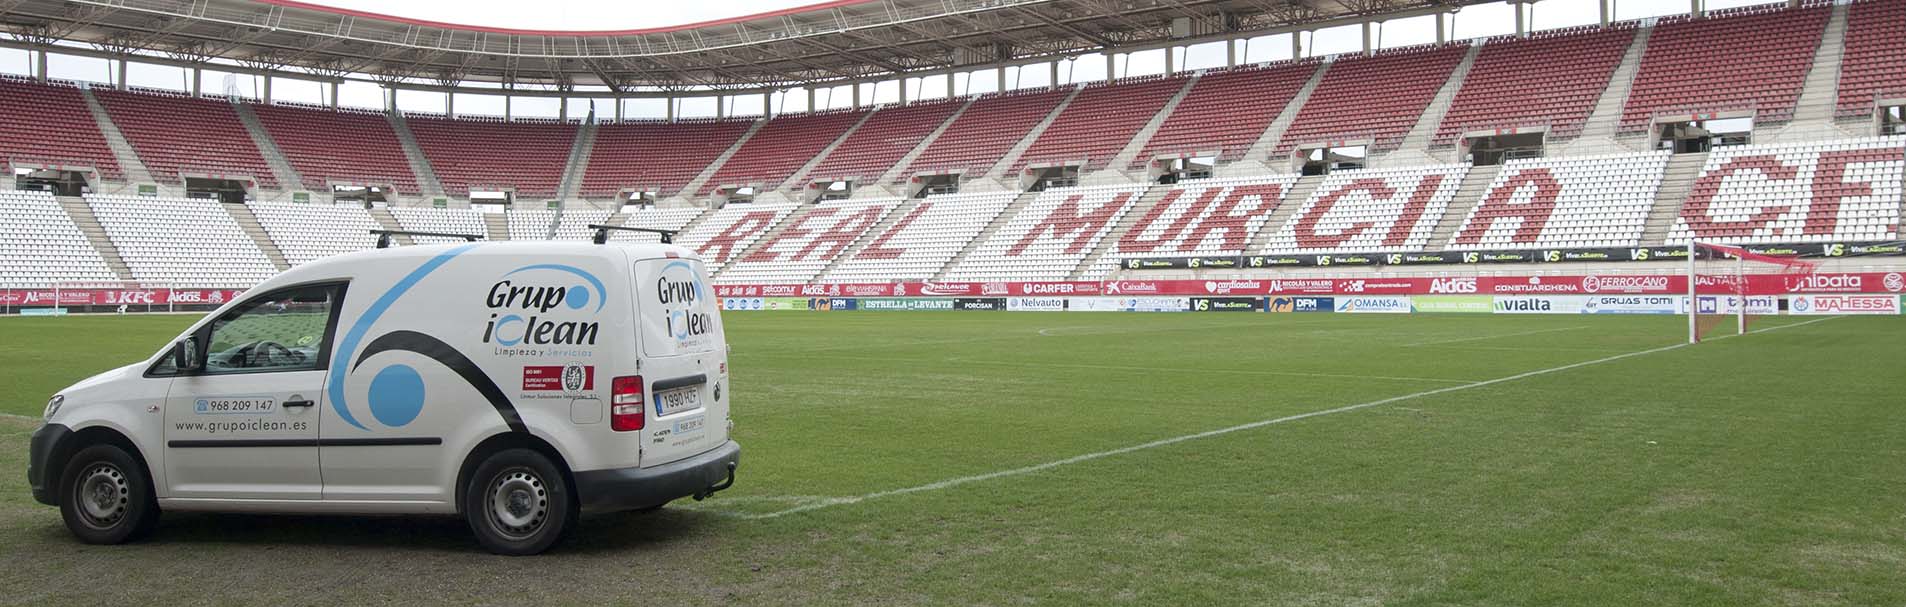 Ejemplo limpieza de instalaciones deportivas en el estadio del Real Murcia